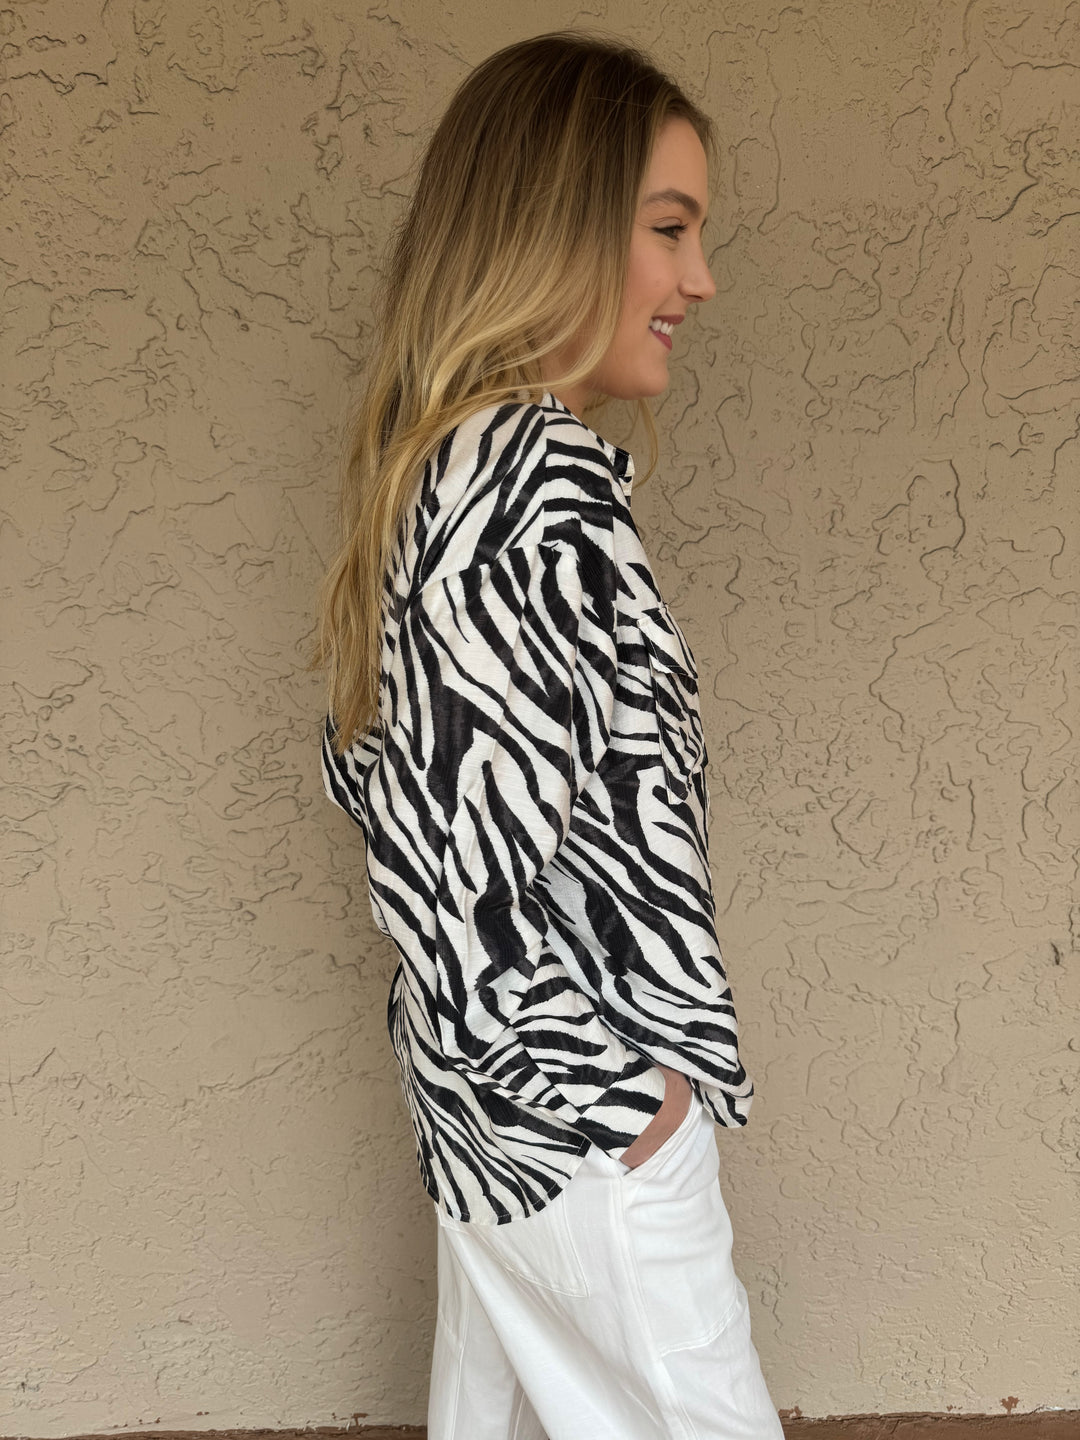 Suncoo Leyla Long Sleeve Top with Zebra Print